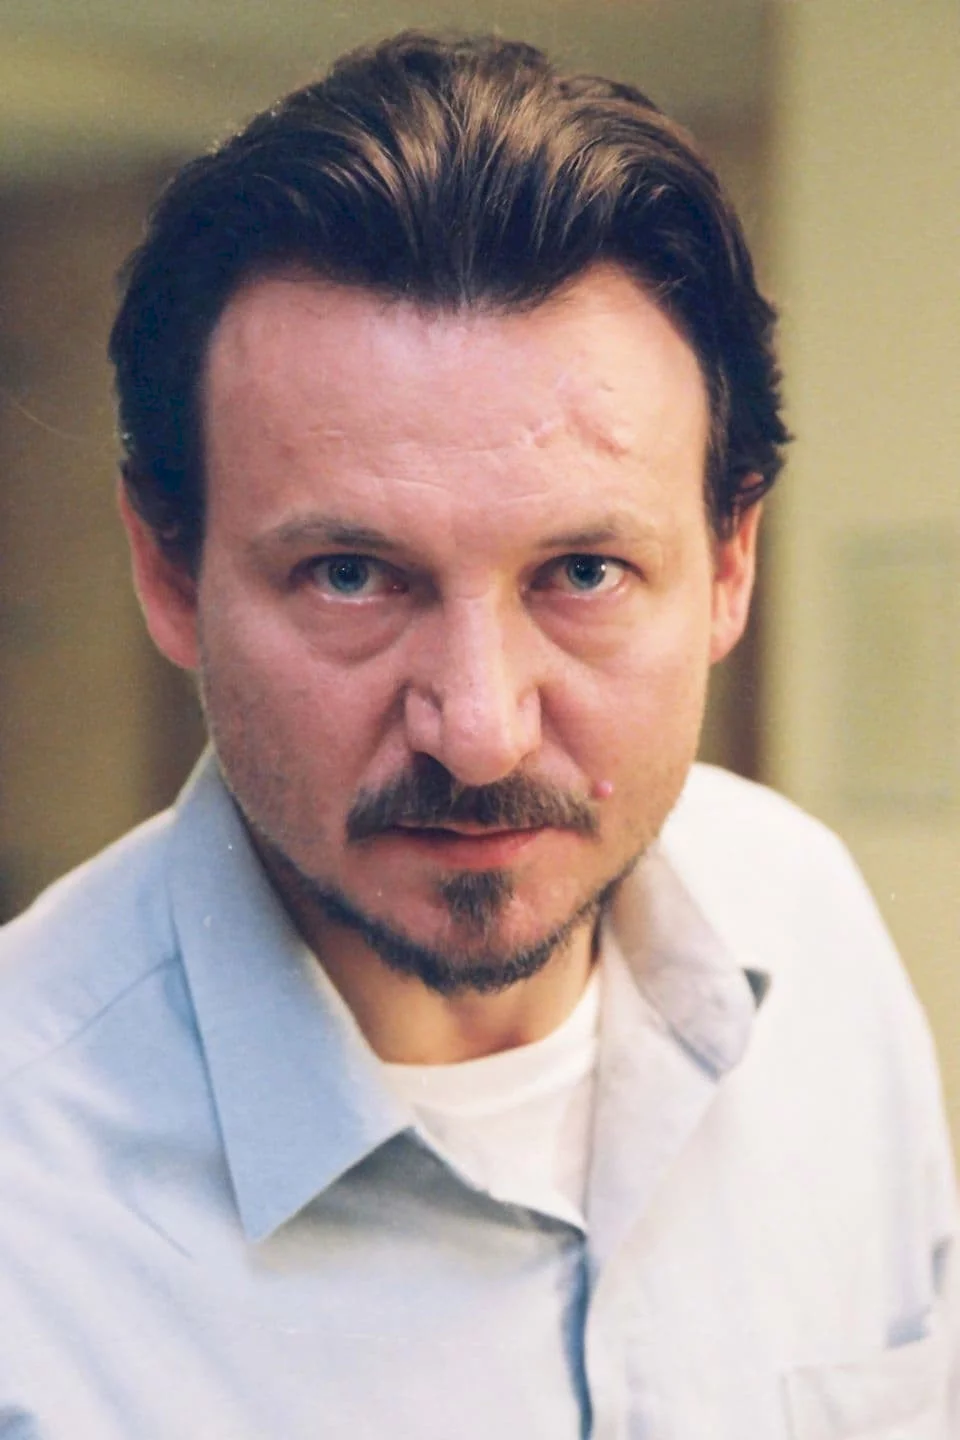 Robert Wieckiewicz